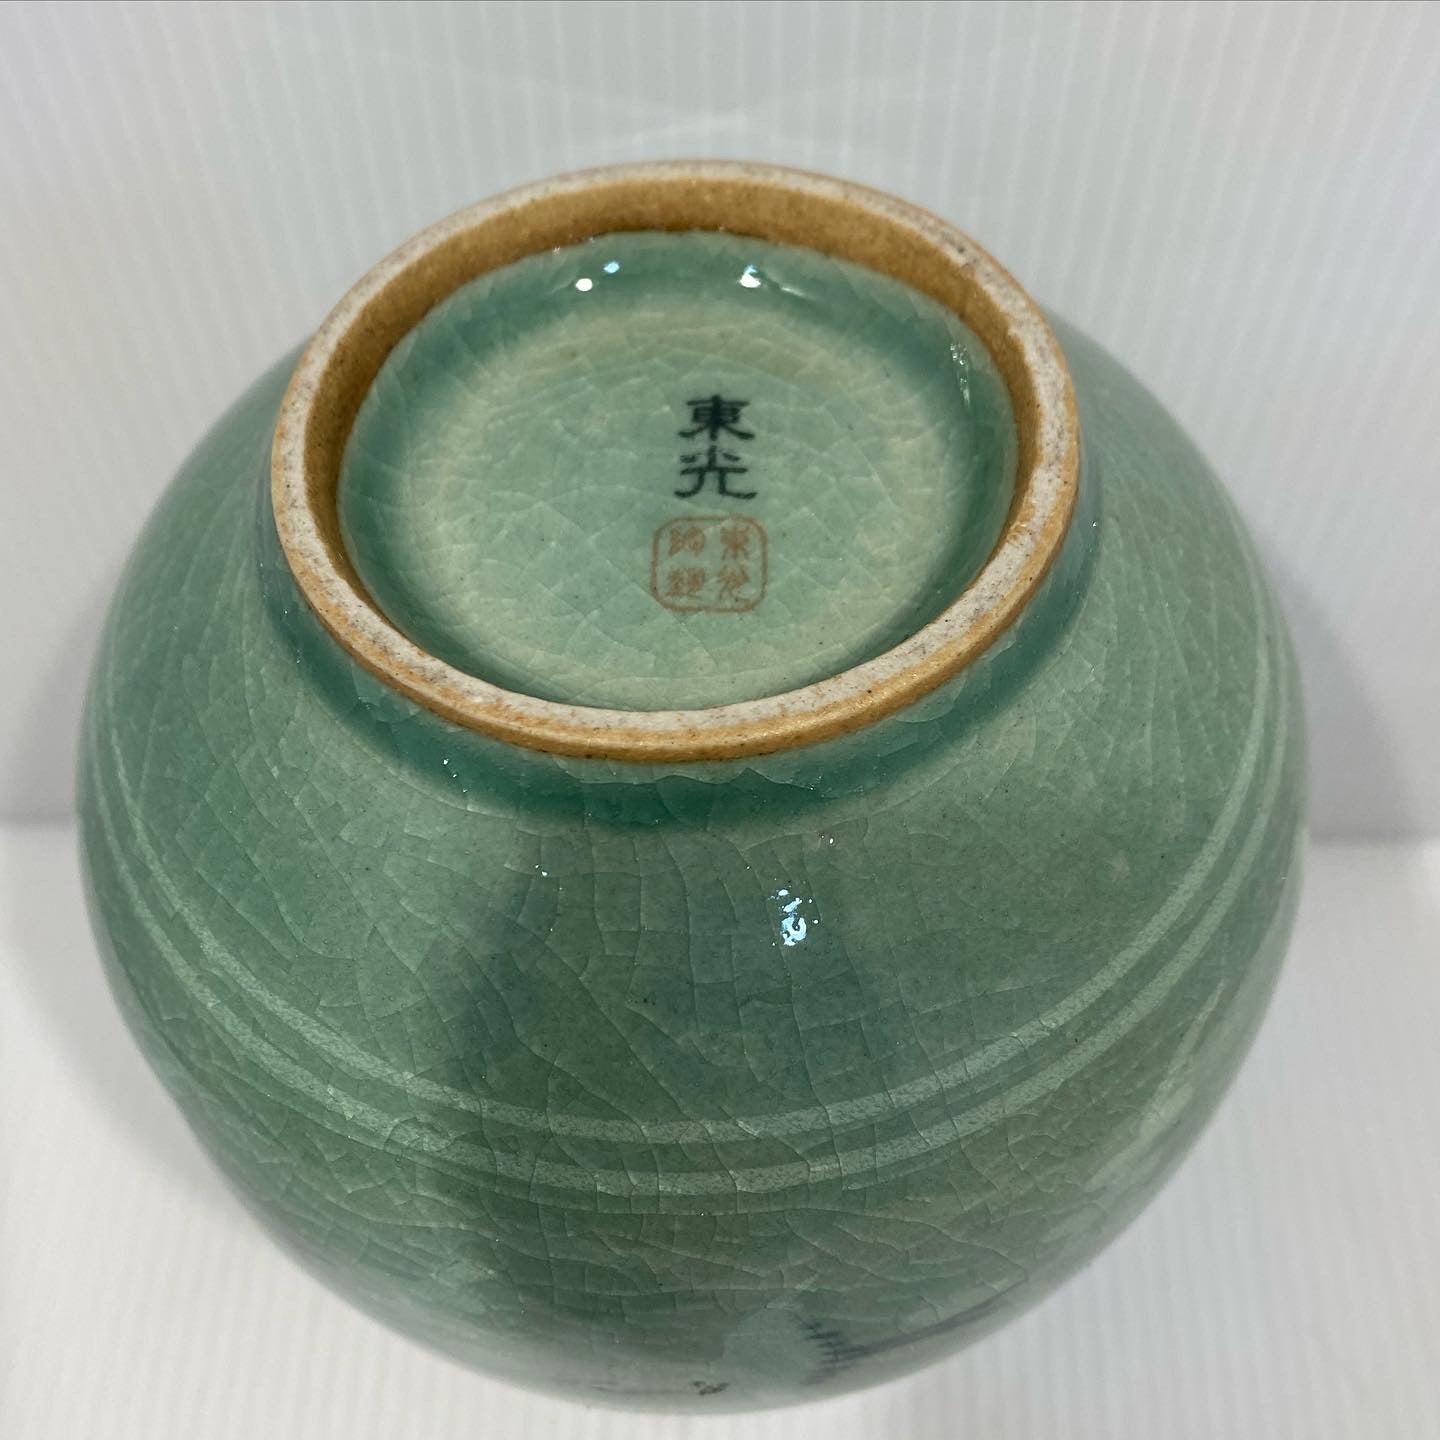 Korean hand-painted ceramic vase 1930s